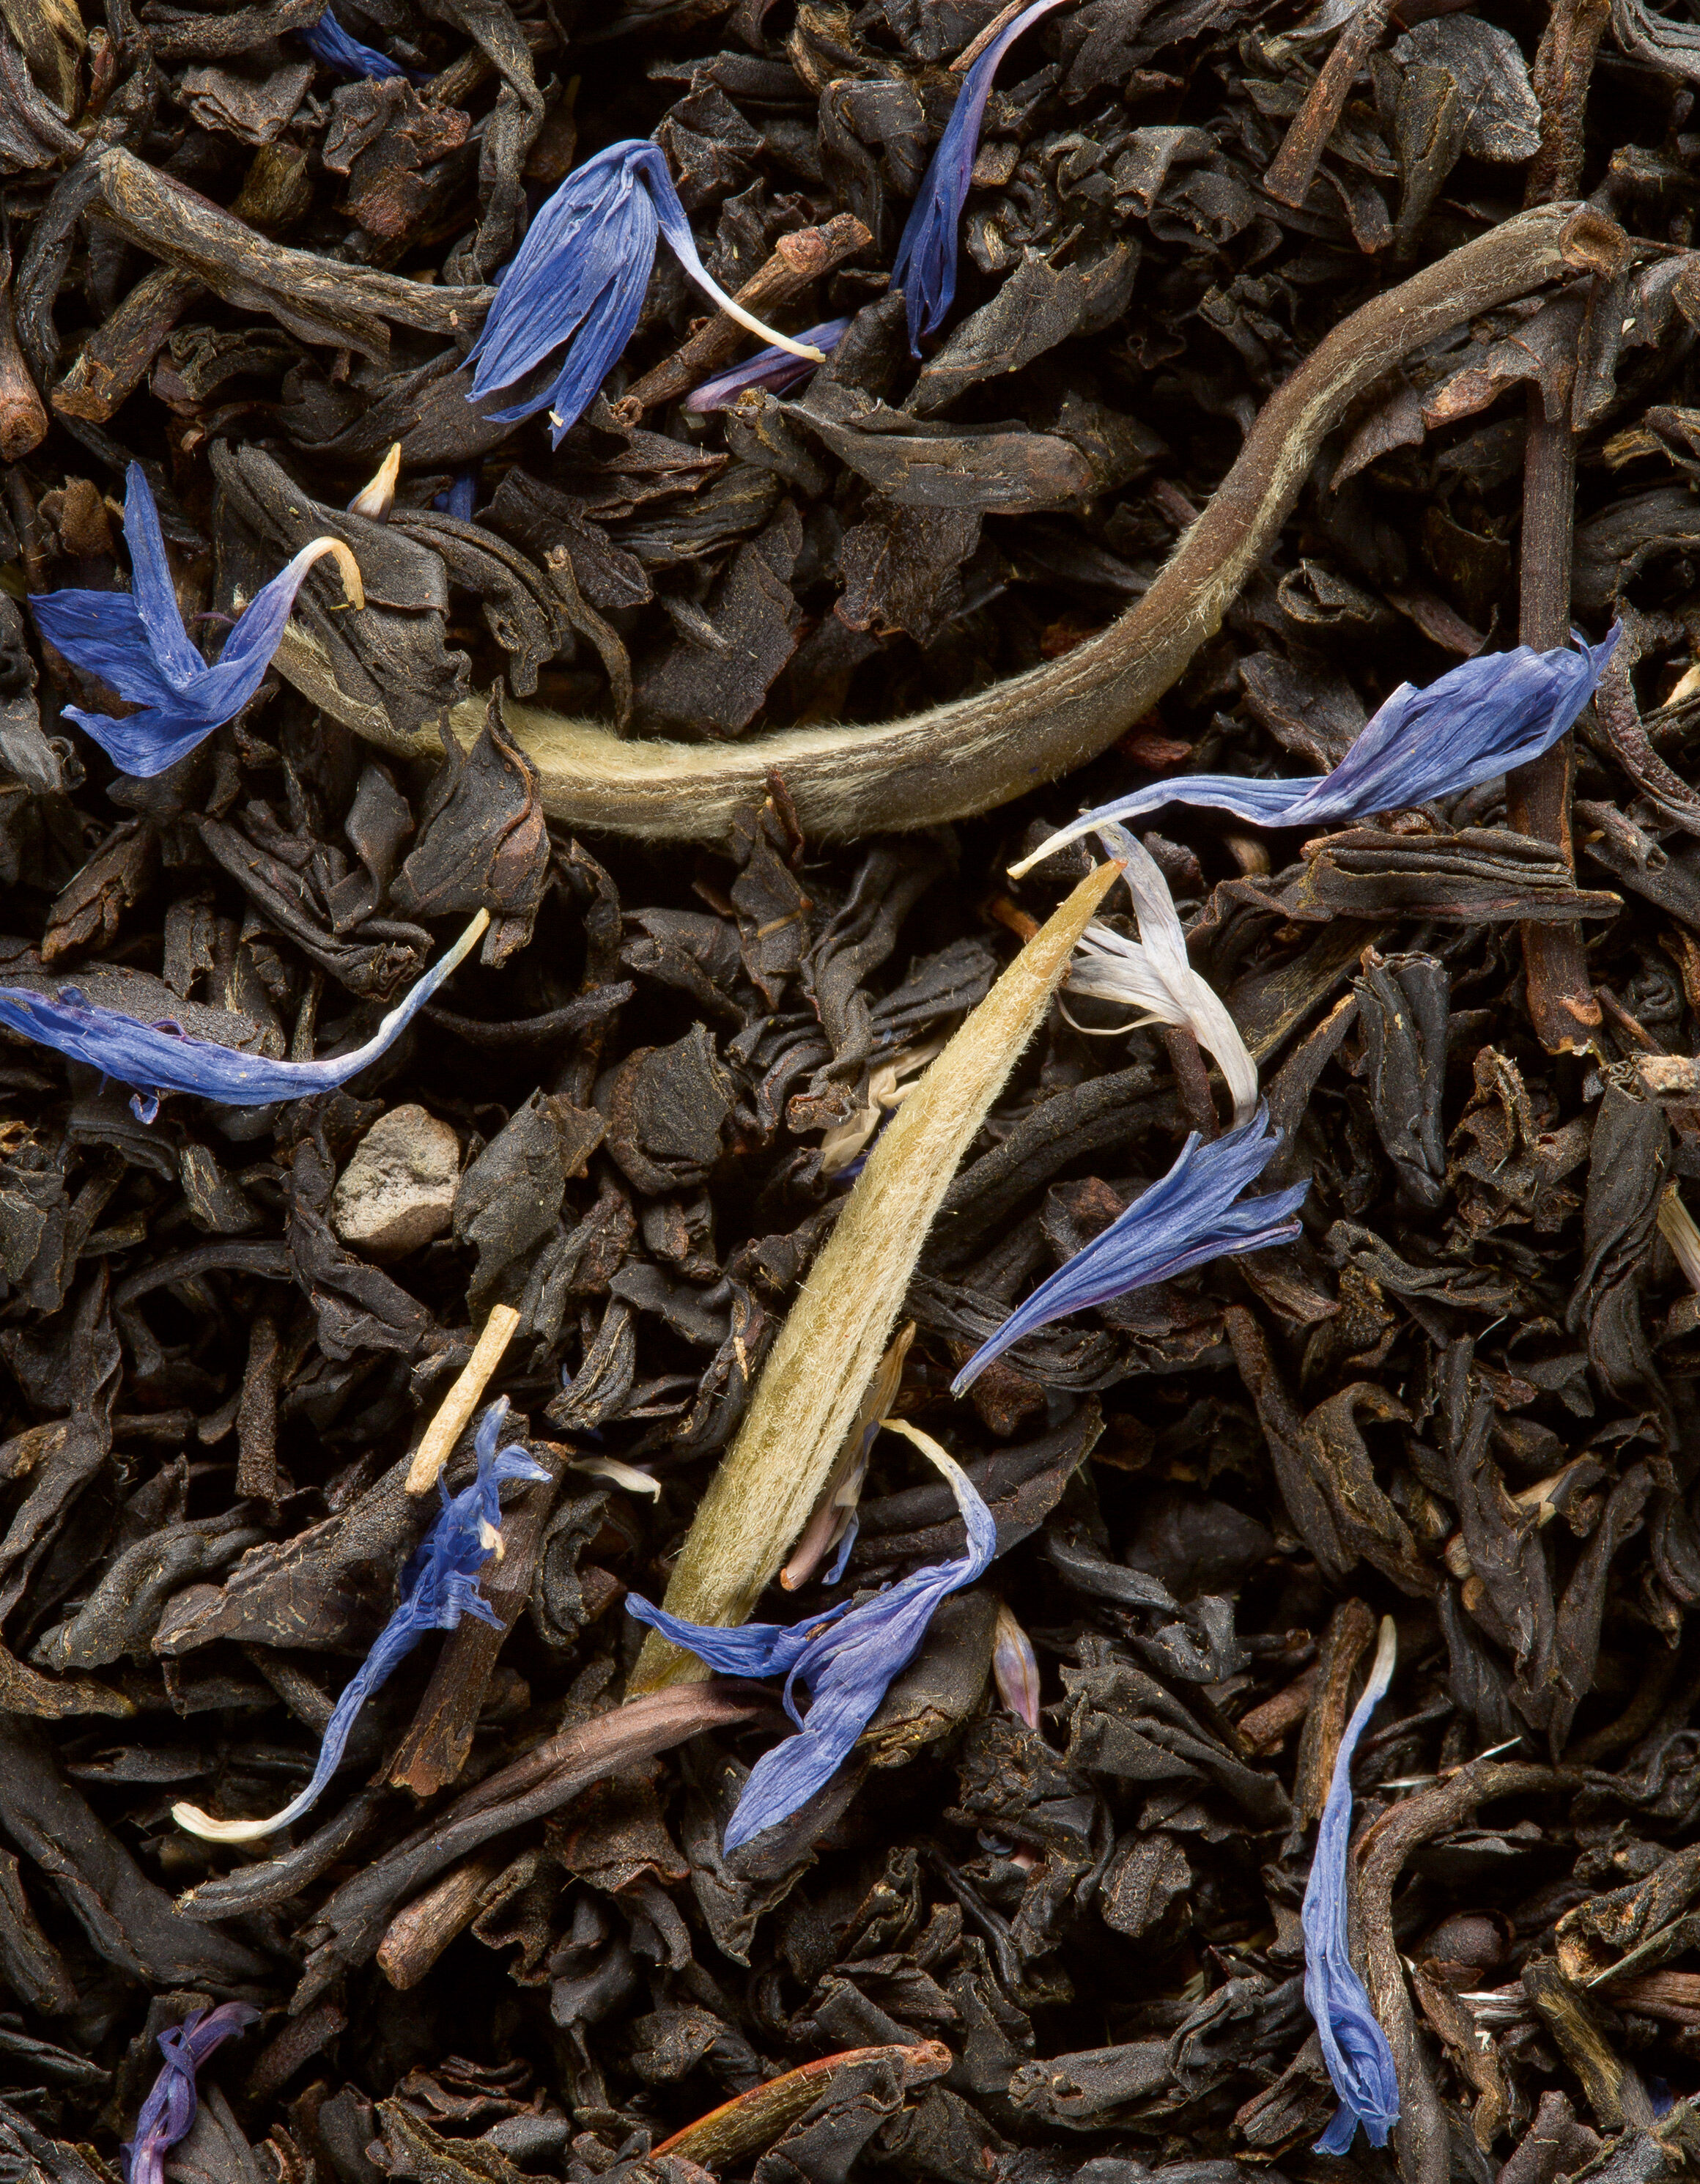 Thé noir aromatisé - N°158 - Earl Grey